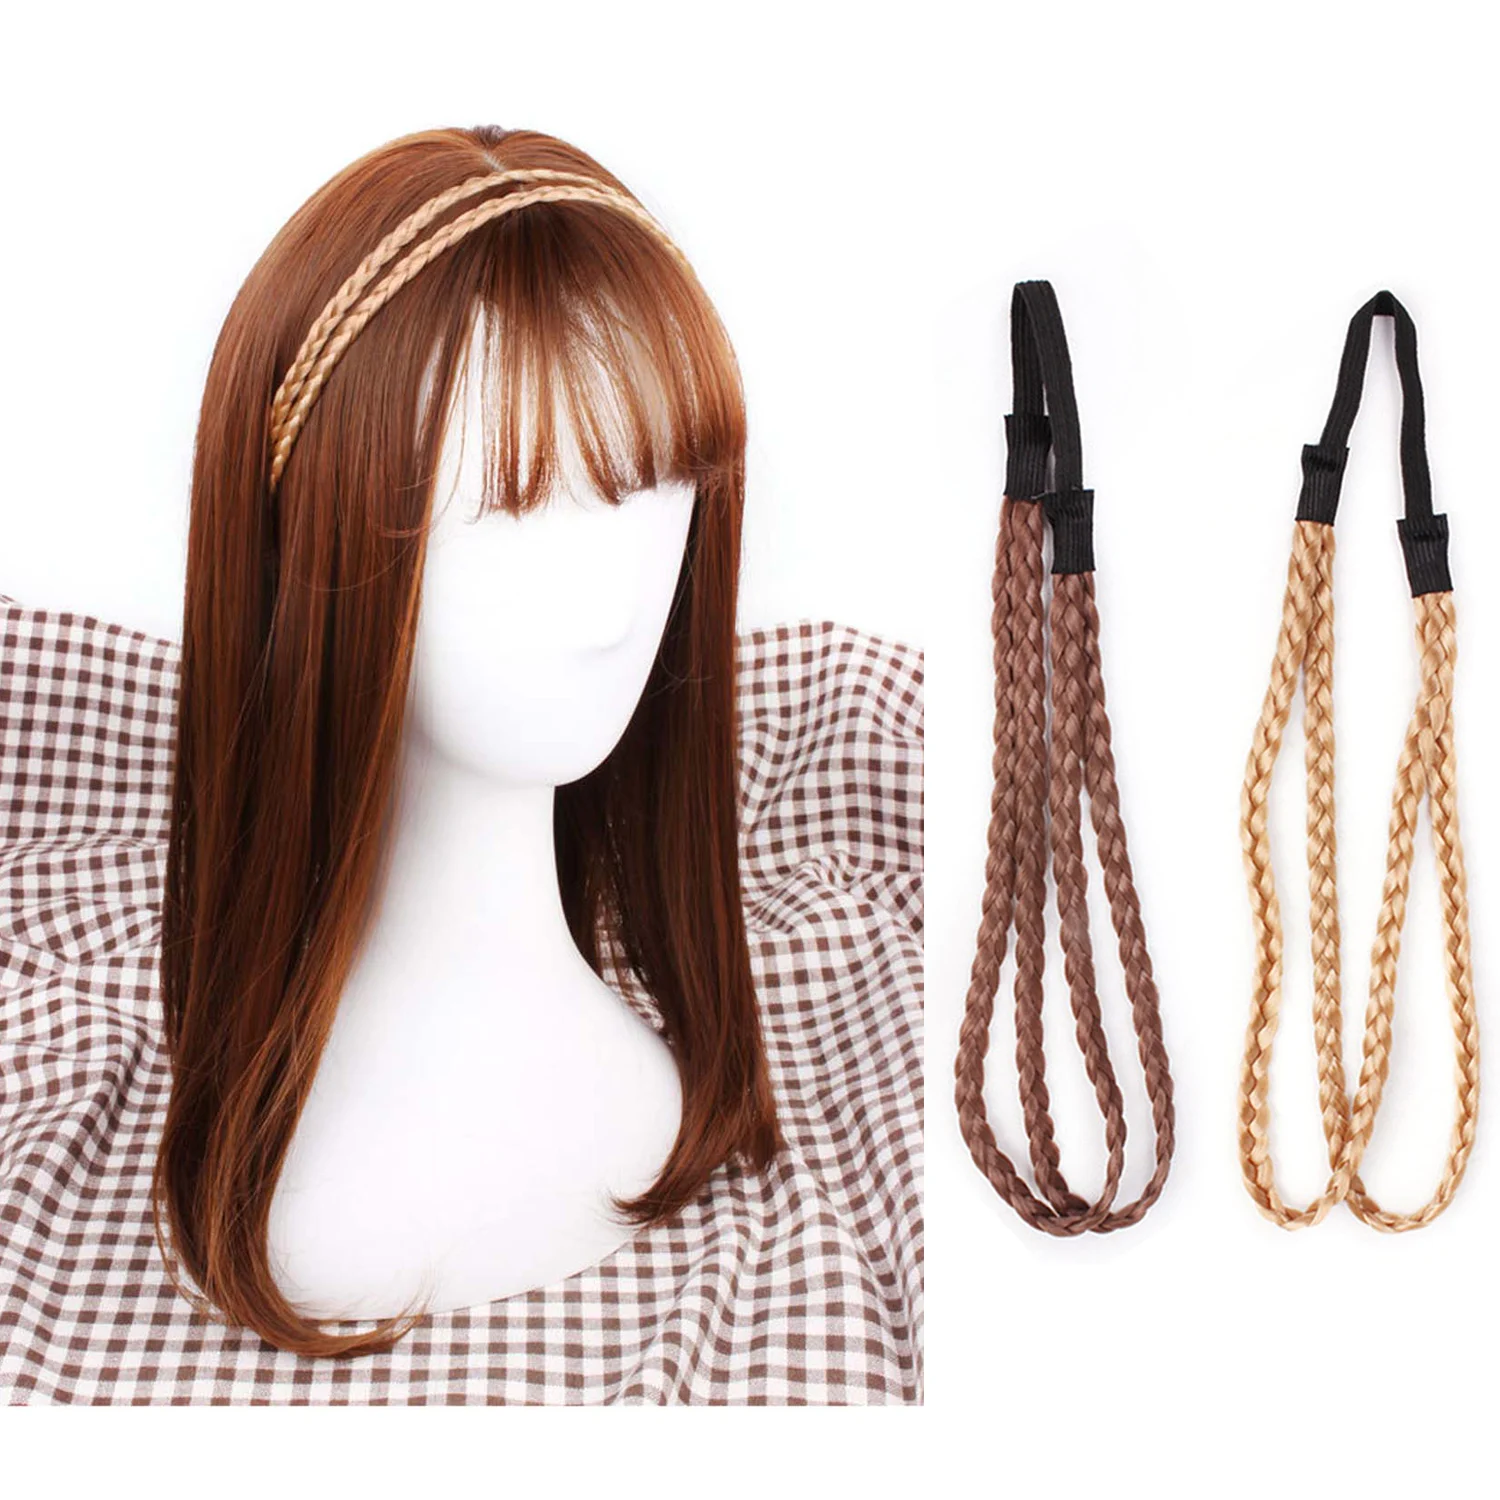 2 шт. плетеные повязки на голову имитация синтетических волос Плетеный ободок эластичная лента для волос оплетка аксессуары для волос для